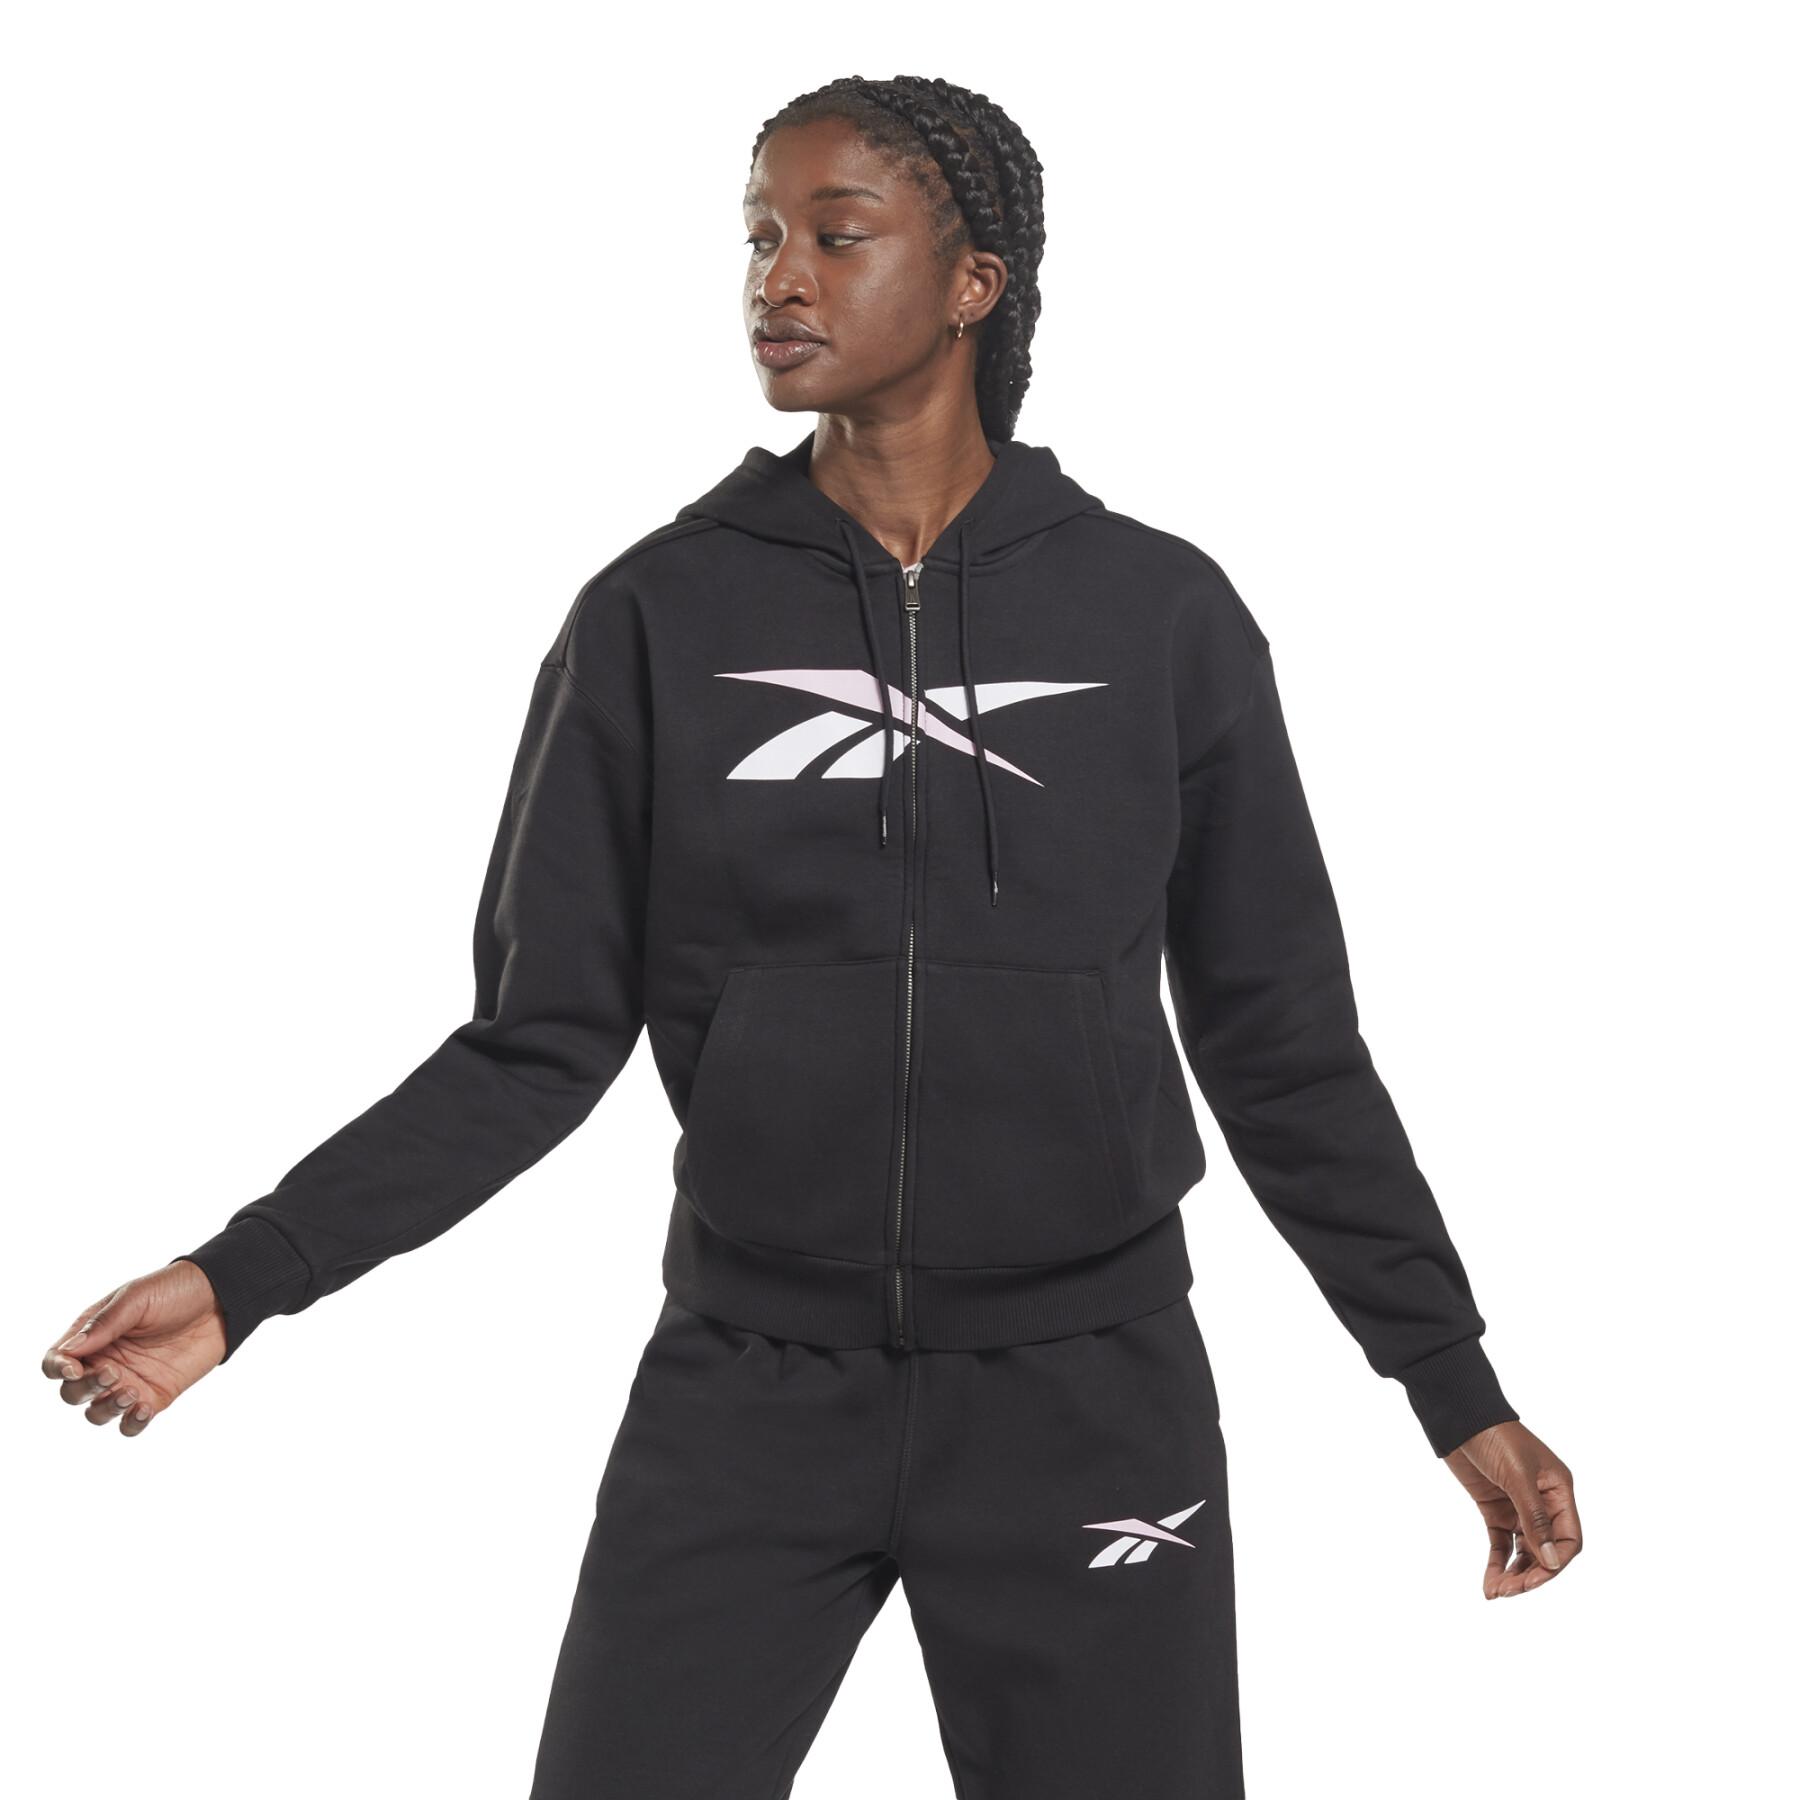 Women's zip-up hoodie Reebok Training Essentials Vector